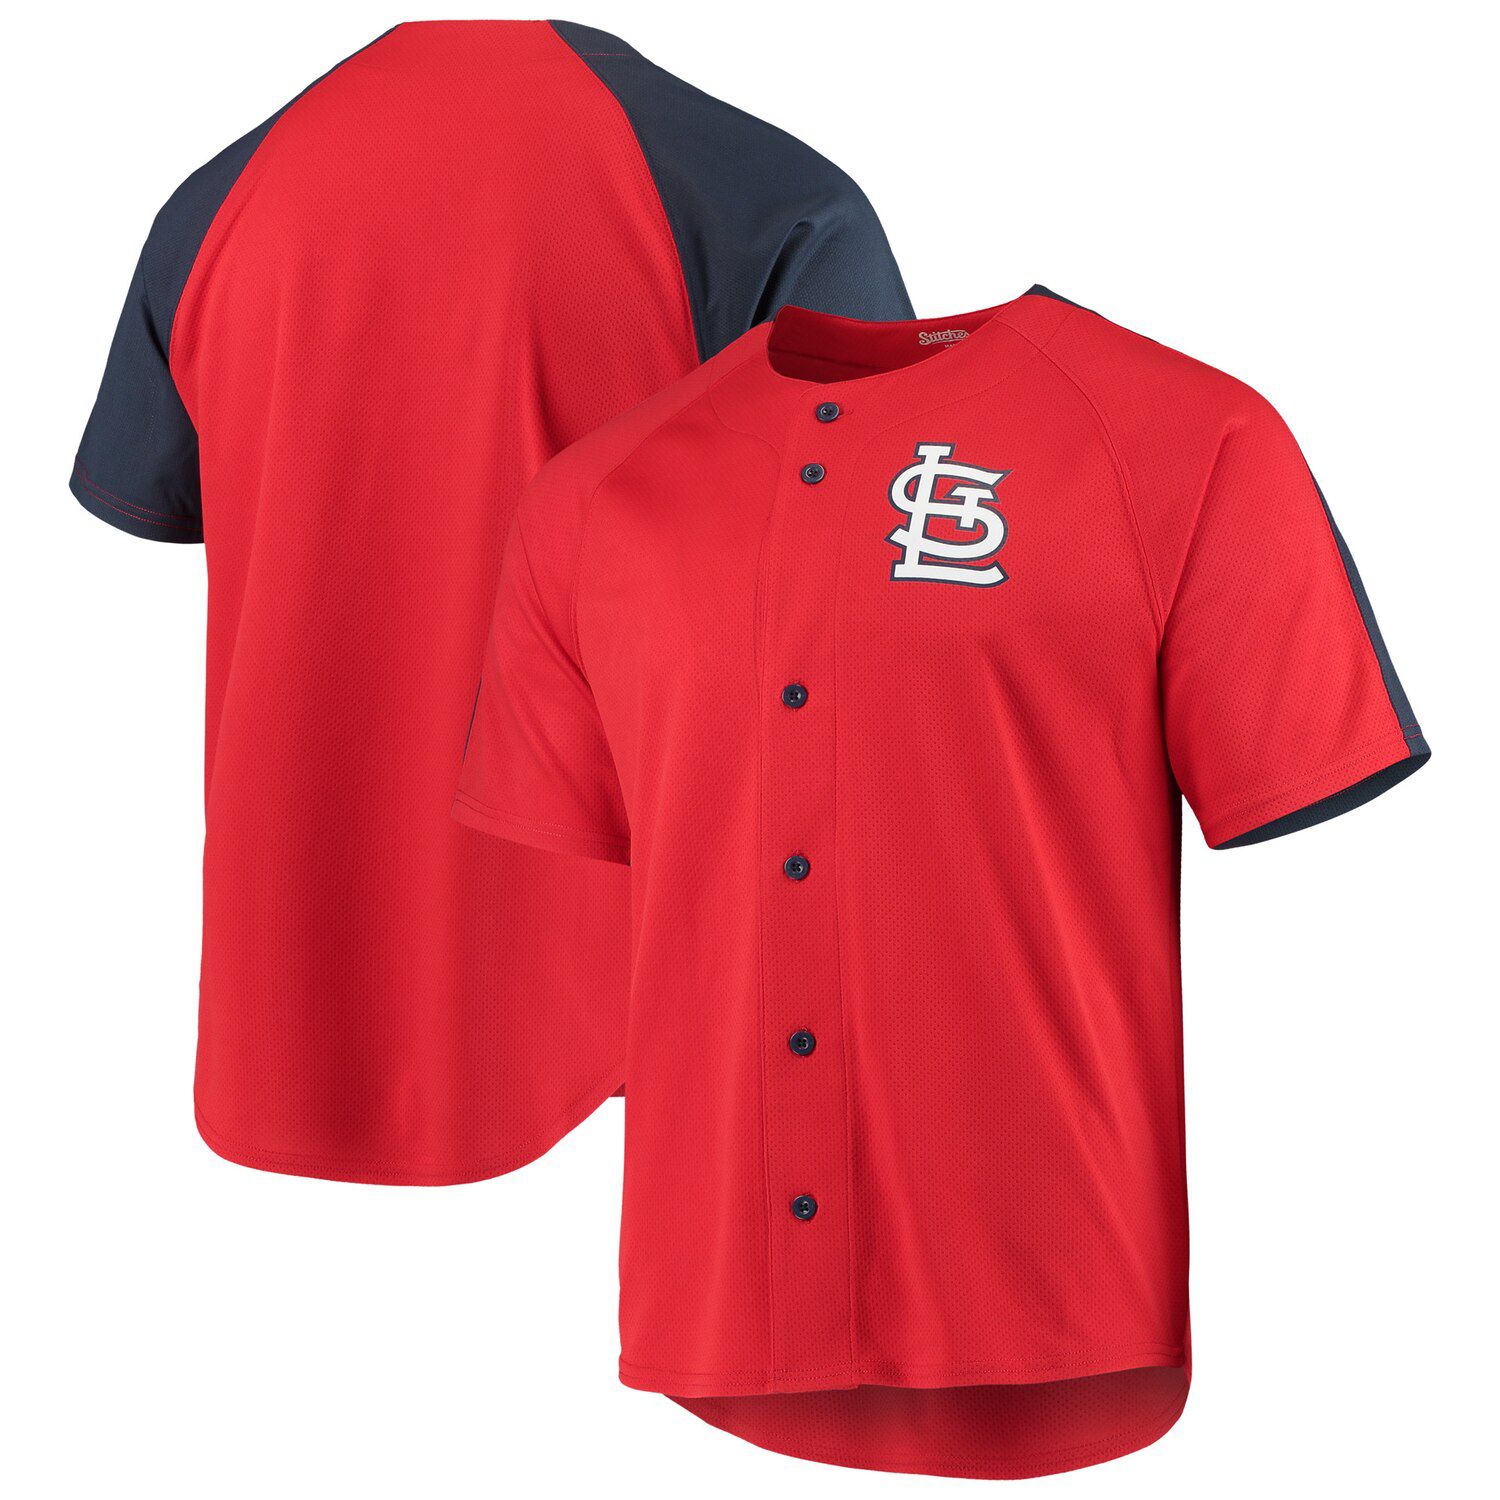 St. Louis Cardinals Logo Button-Up Jersey